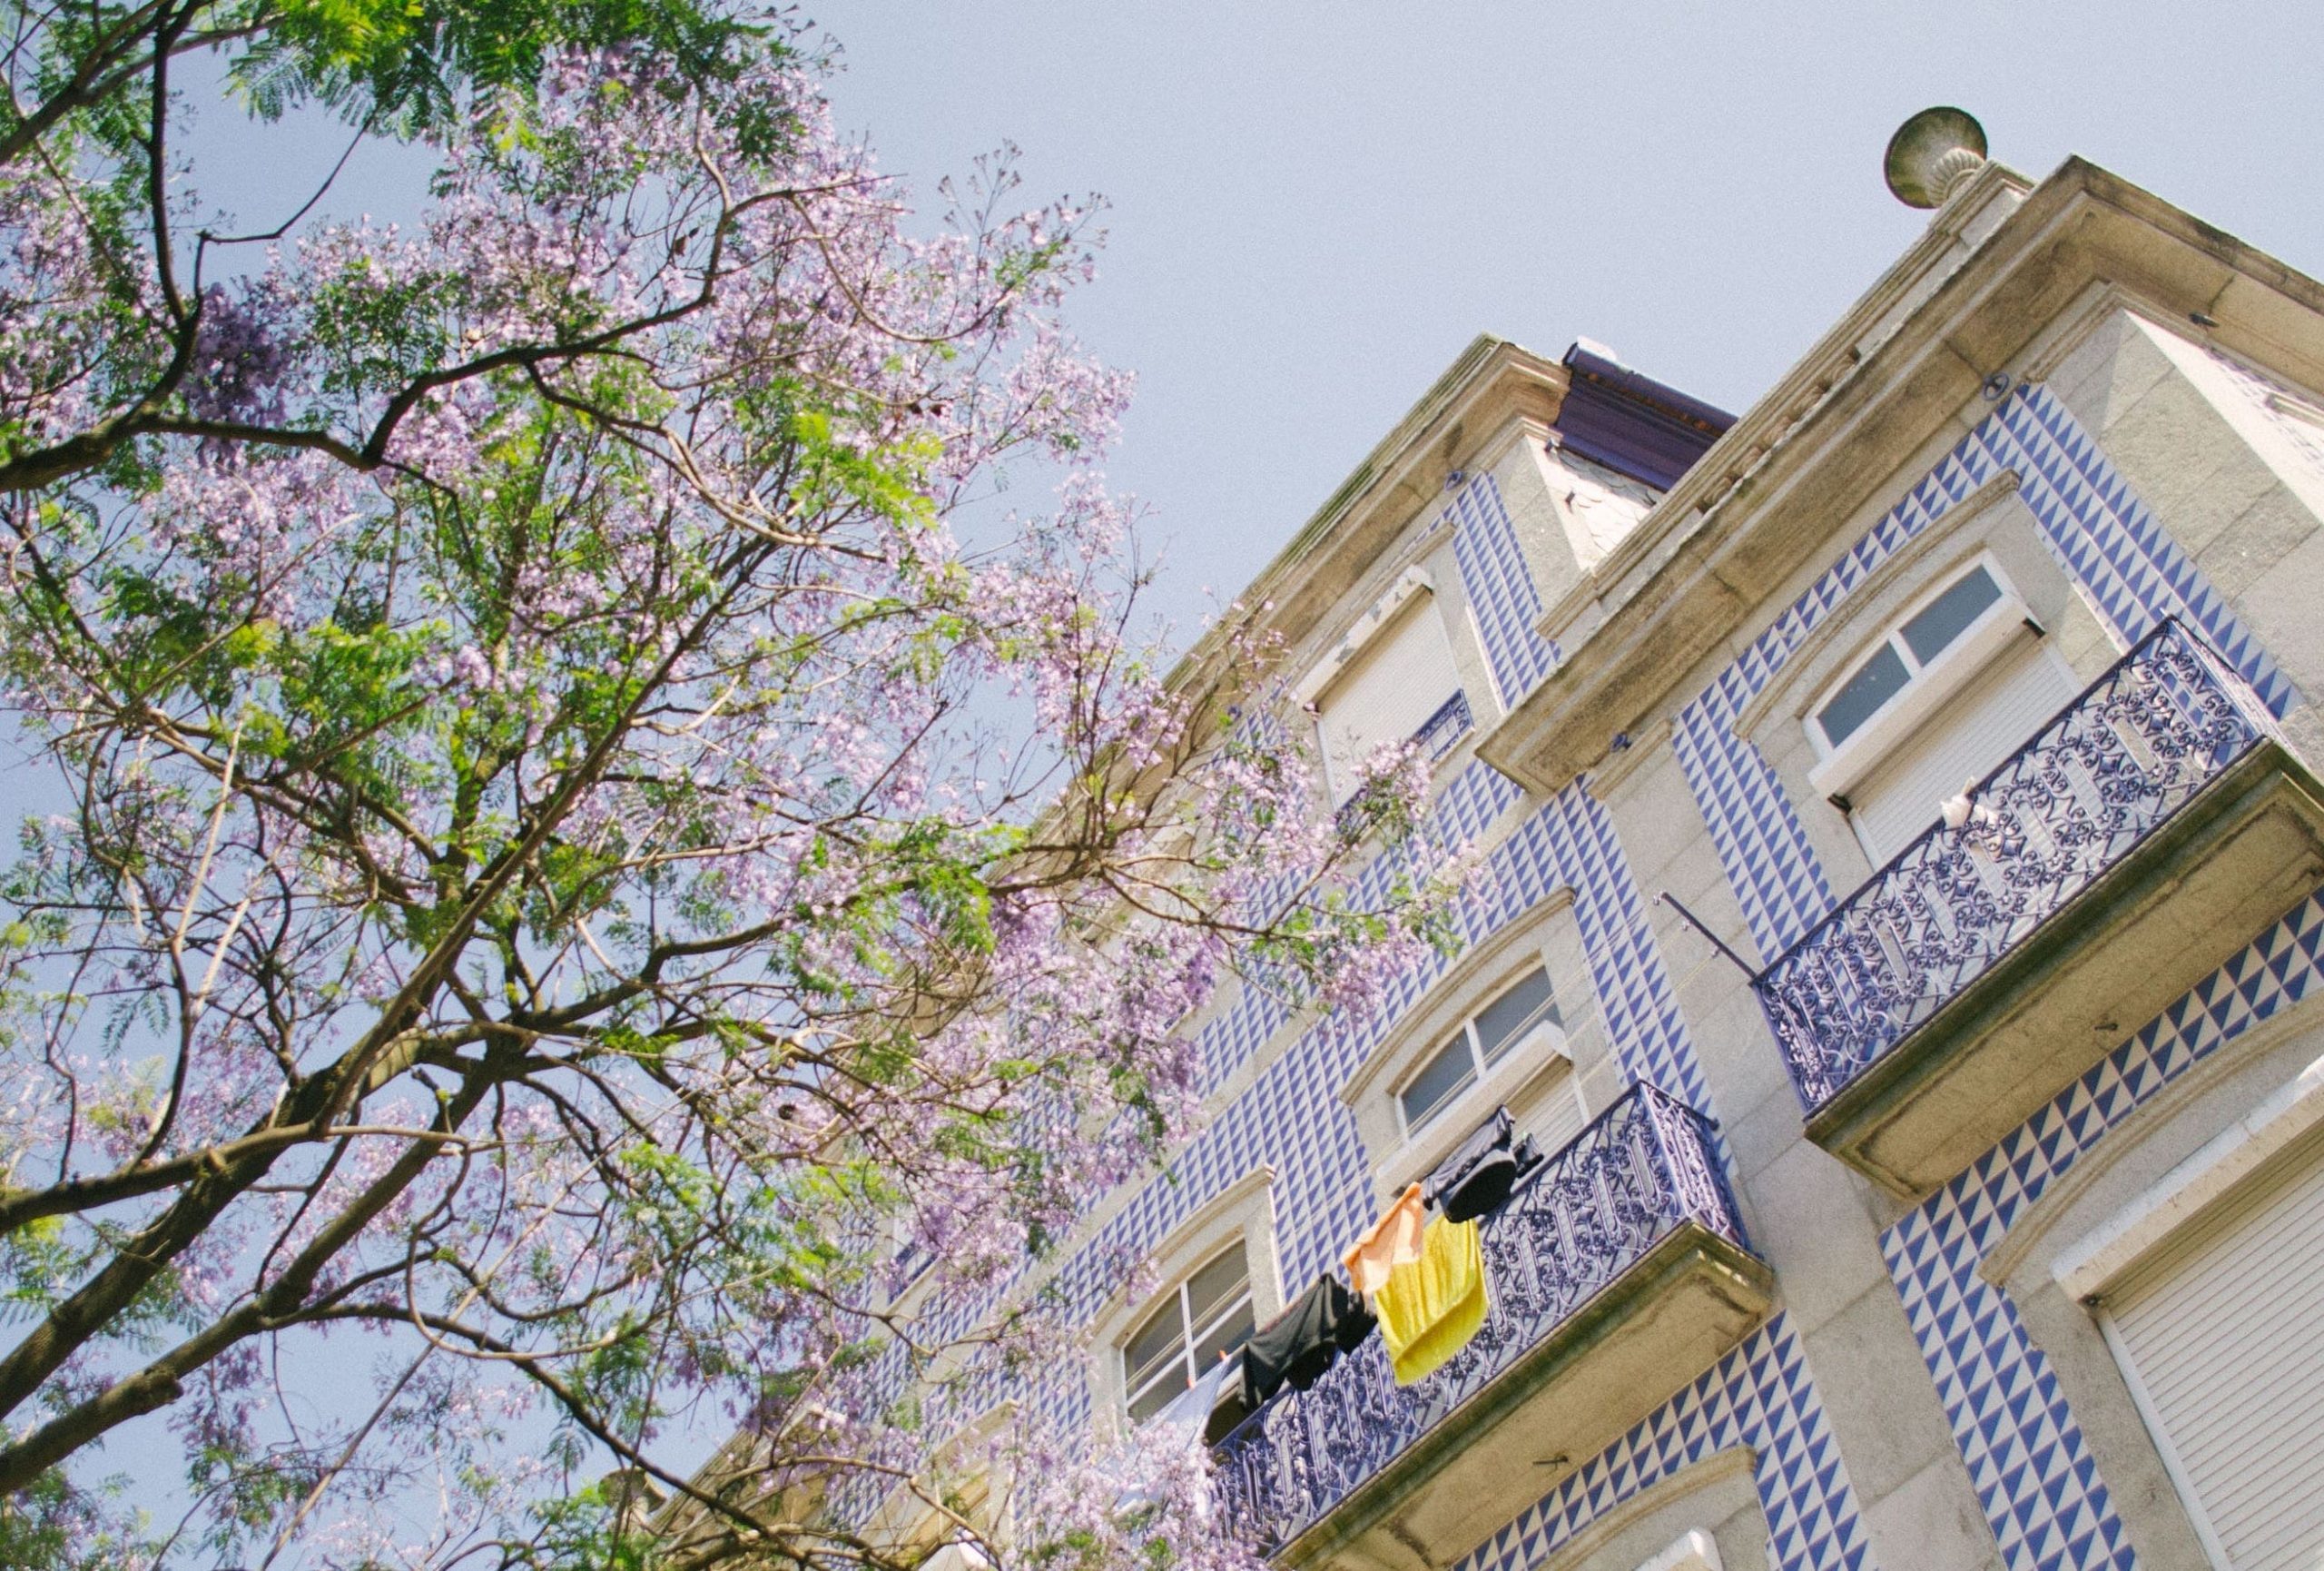 Apartamento em um prédio com a fachada cheia de azulejos em Portugal